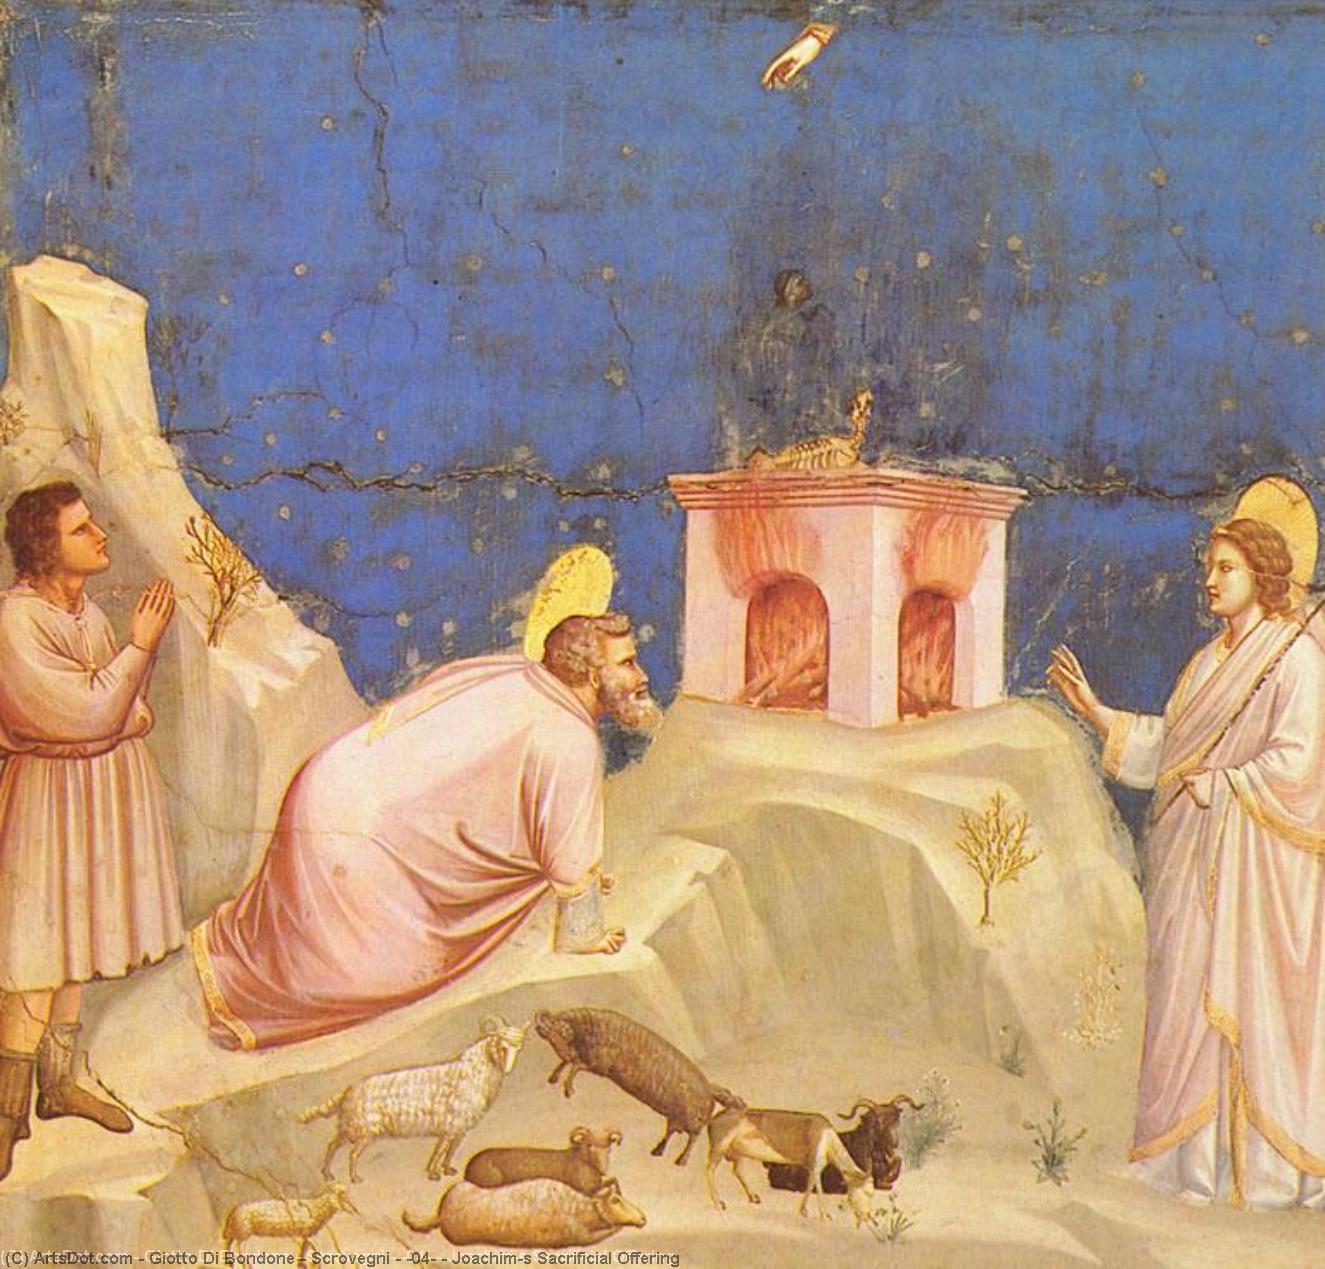 WikiOO.org - Enciclopédia das Belas Artes - Pintura, Arte por Giotto Di Bondone - Scrovegni - [04] - Joachim's Sacrificial Offering